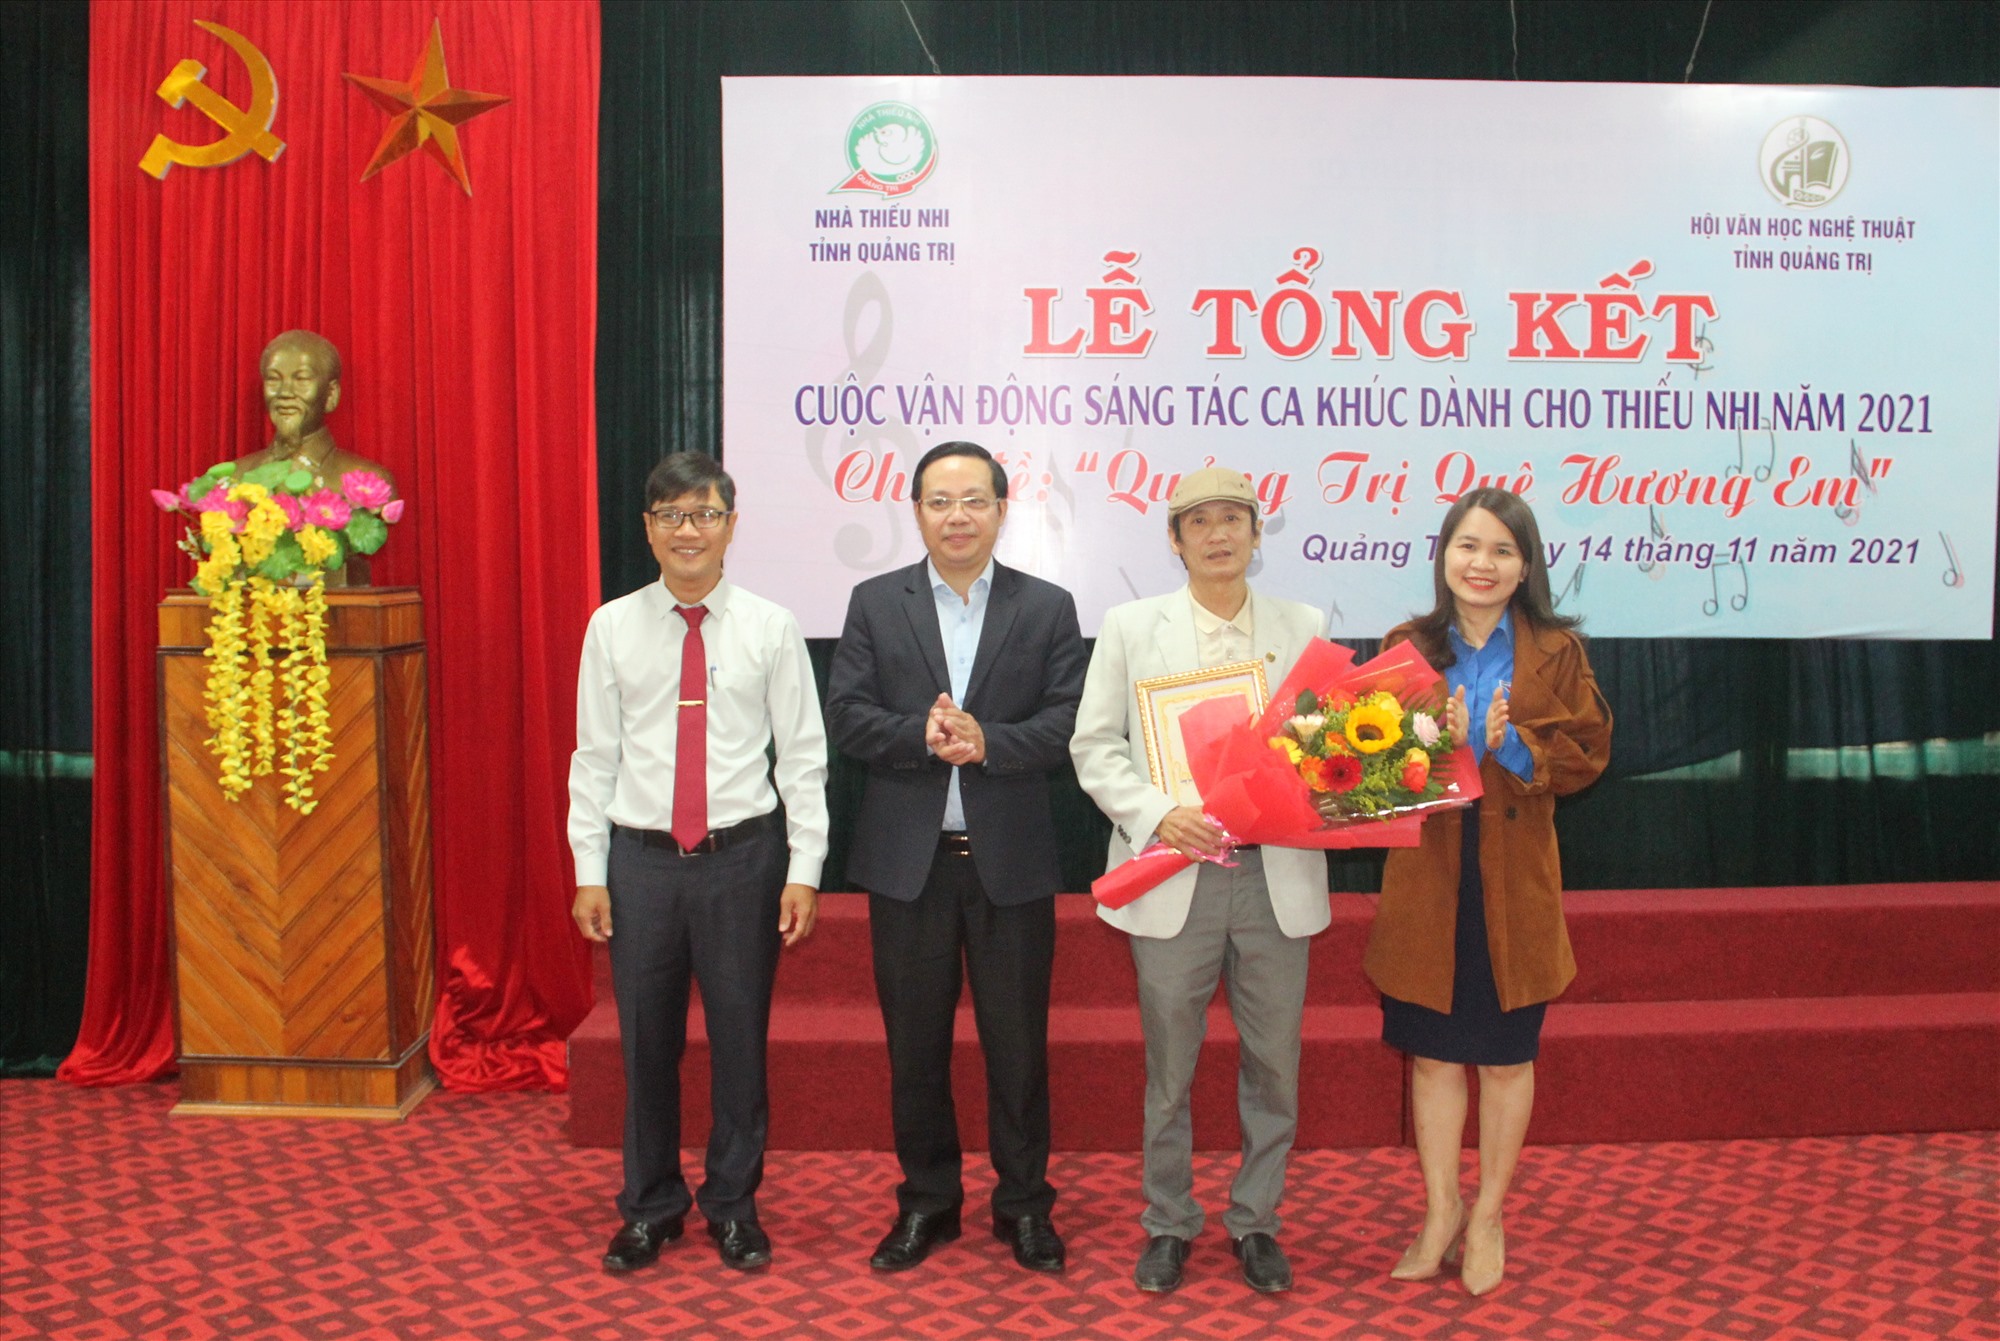 Ban tổ chức trao giải A cho tác phẩm “Yêu lắm Quảng Trị quê em” của nhạc sĩ Lê Đình Trí - Ảnh: M.Đ